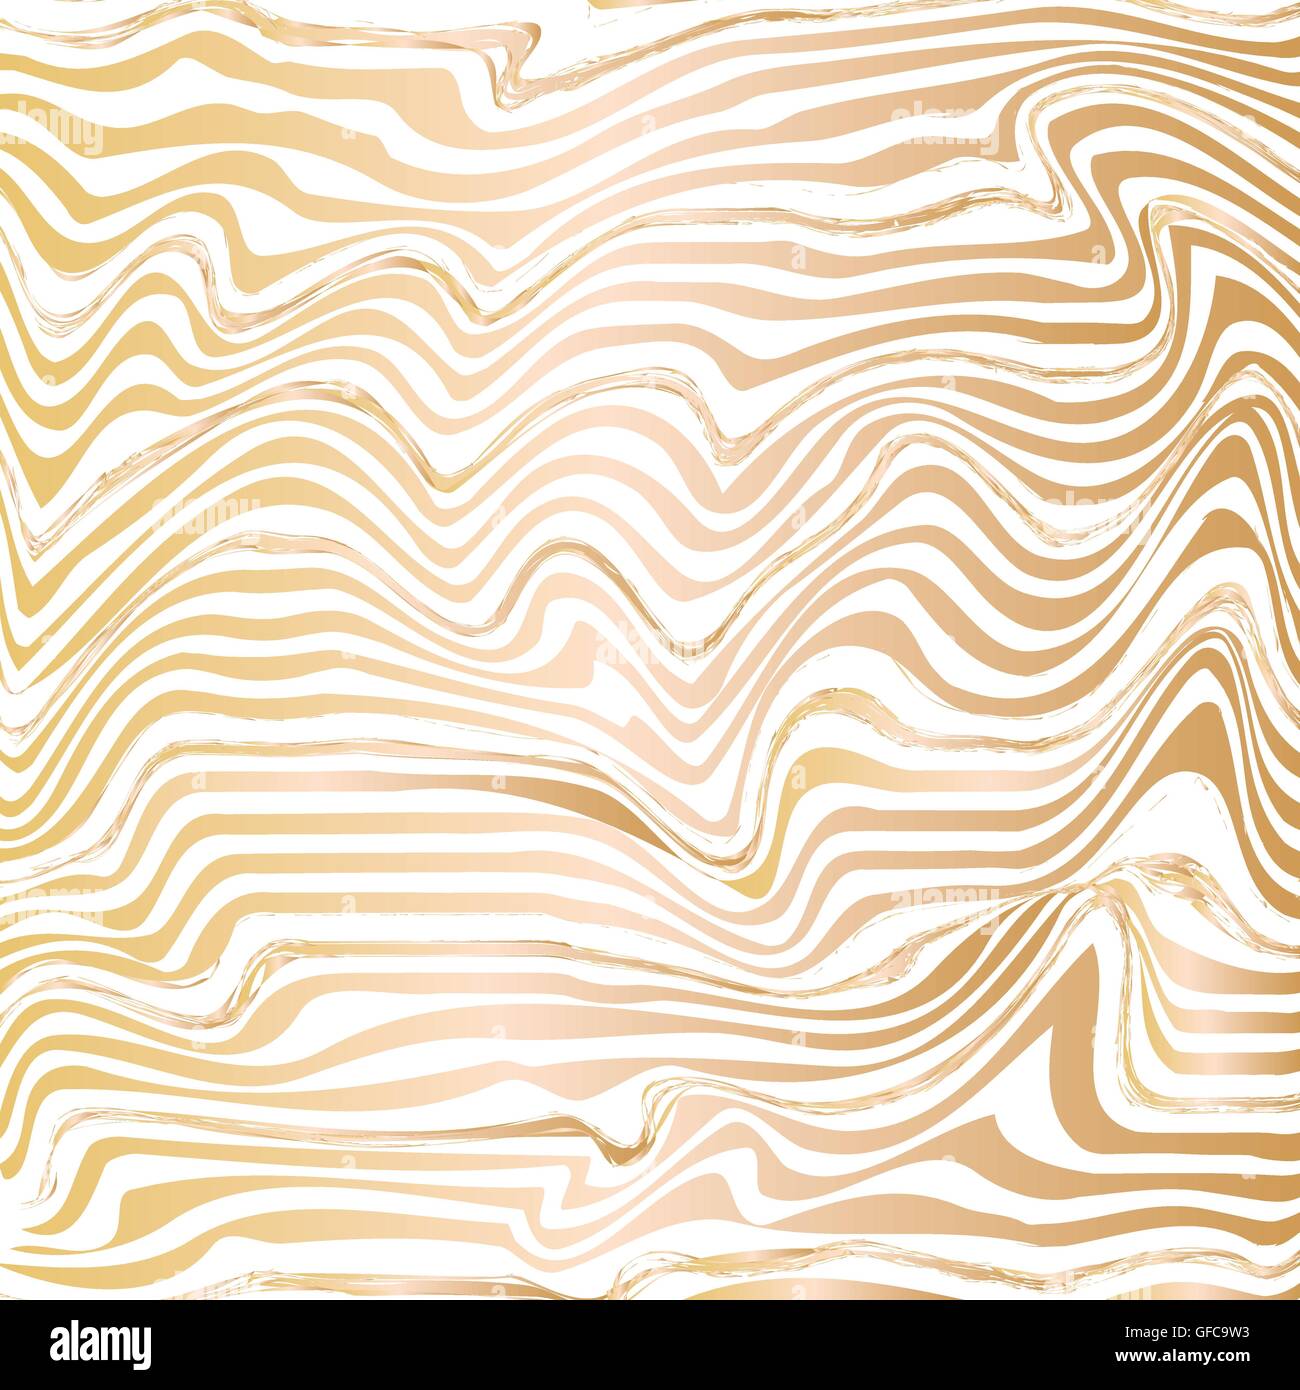 Goldene abstrakte Welle Linie Tinte Textur. Handgezeichnete Abbildung Technik Marmorierung. Stock Vektor